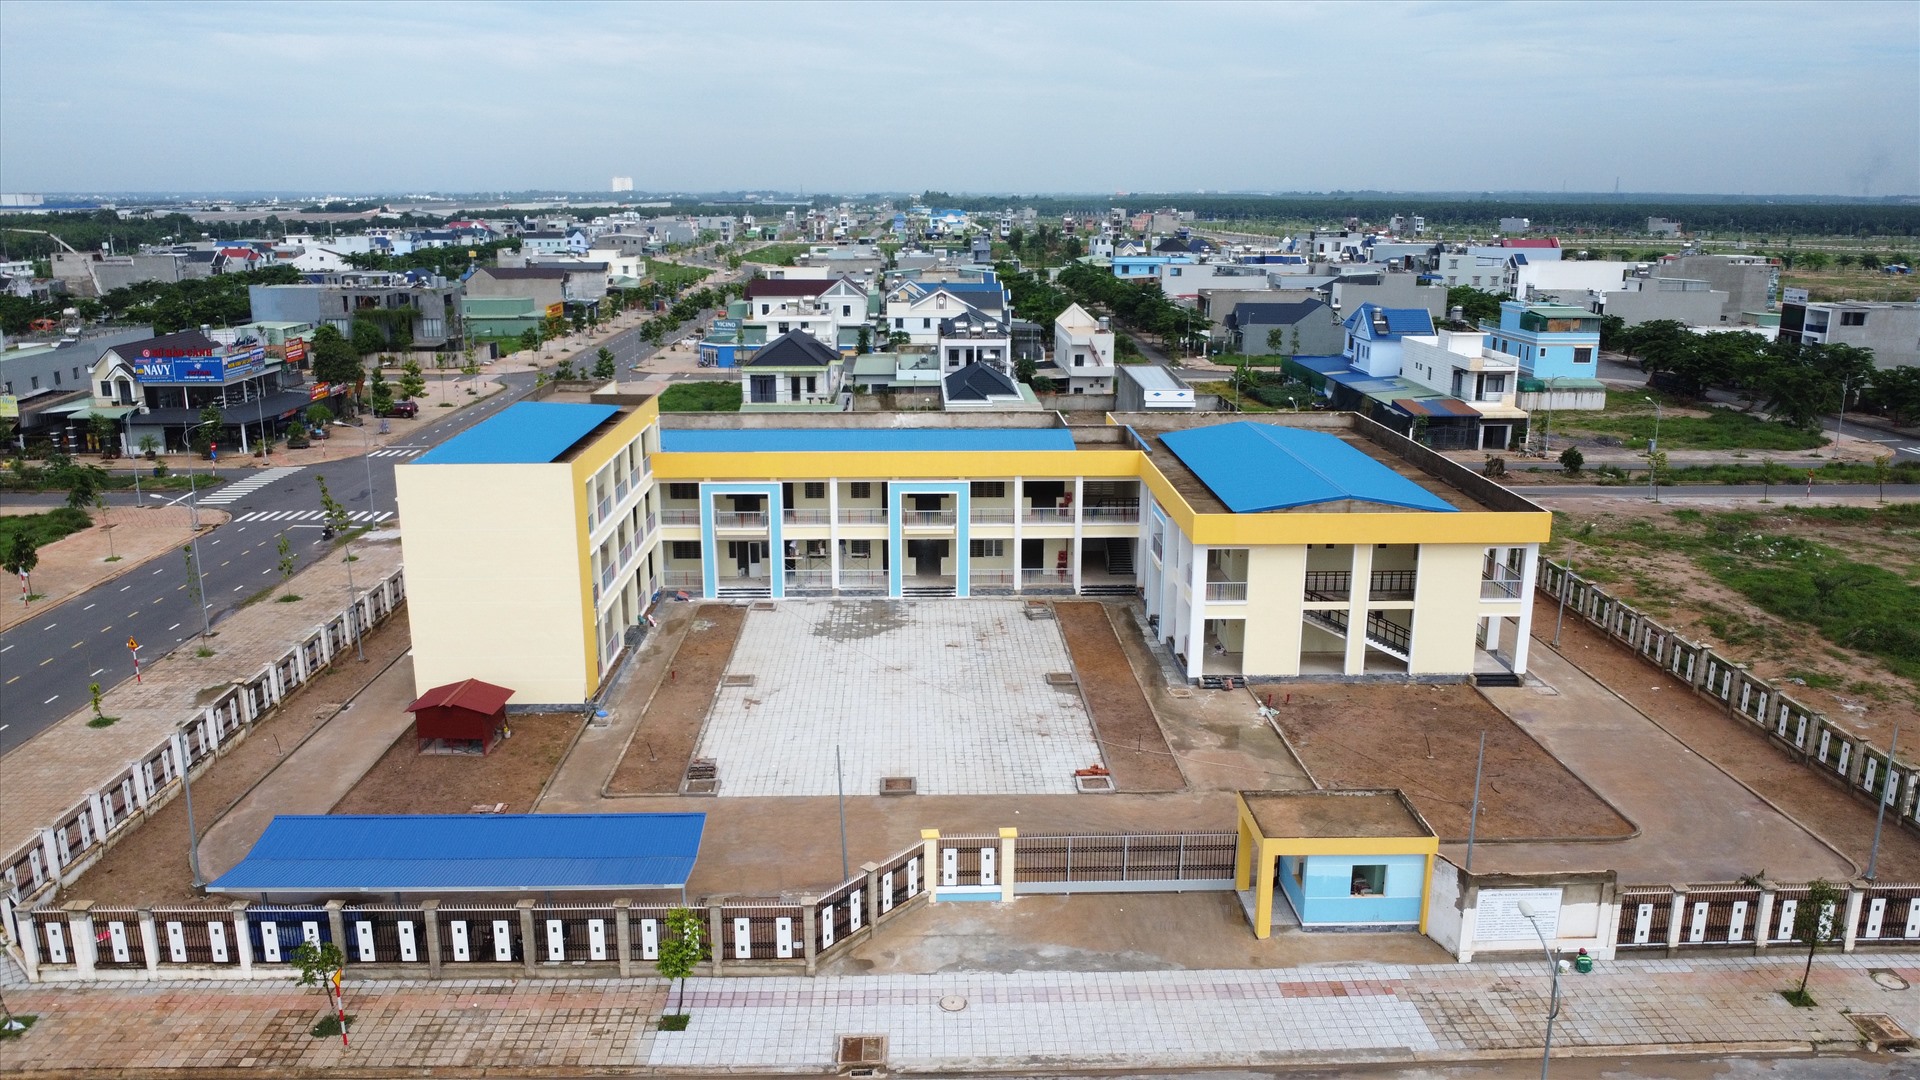 Một trường mầm non gần hoàn thiện đón năm học mới ở khu tái định cư Lộc An - Bình Sơn. Ảnh: Hà Anh Chiến